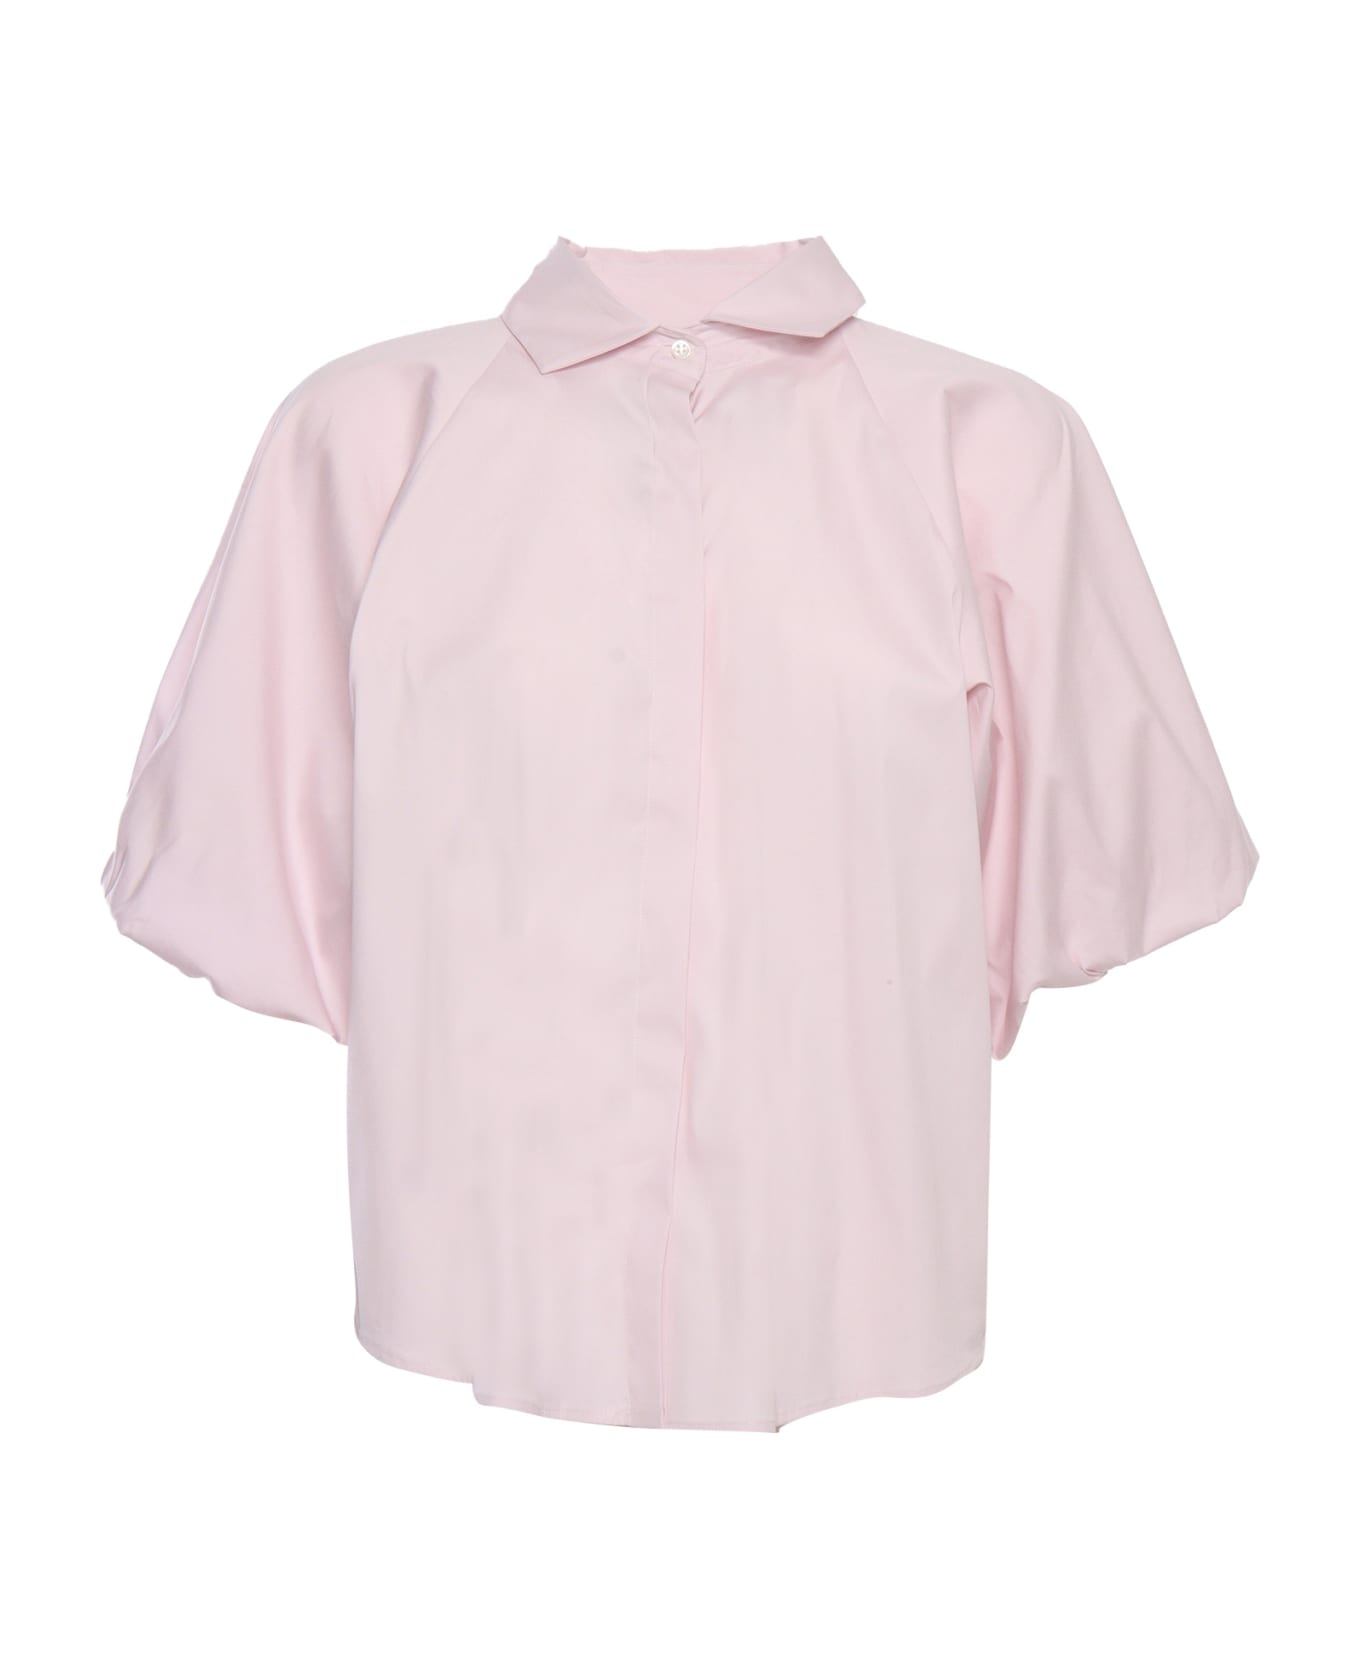 Mazzarelli Pink Shirt - PINK